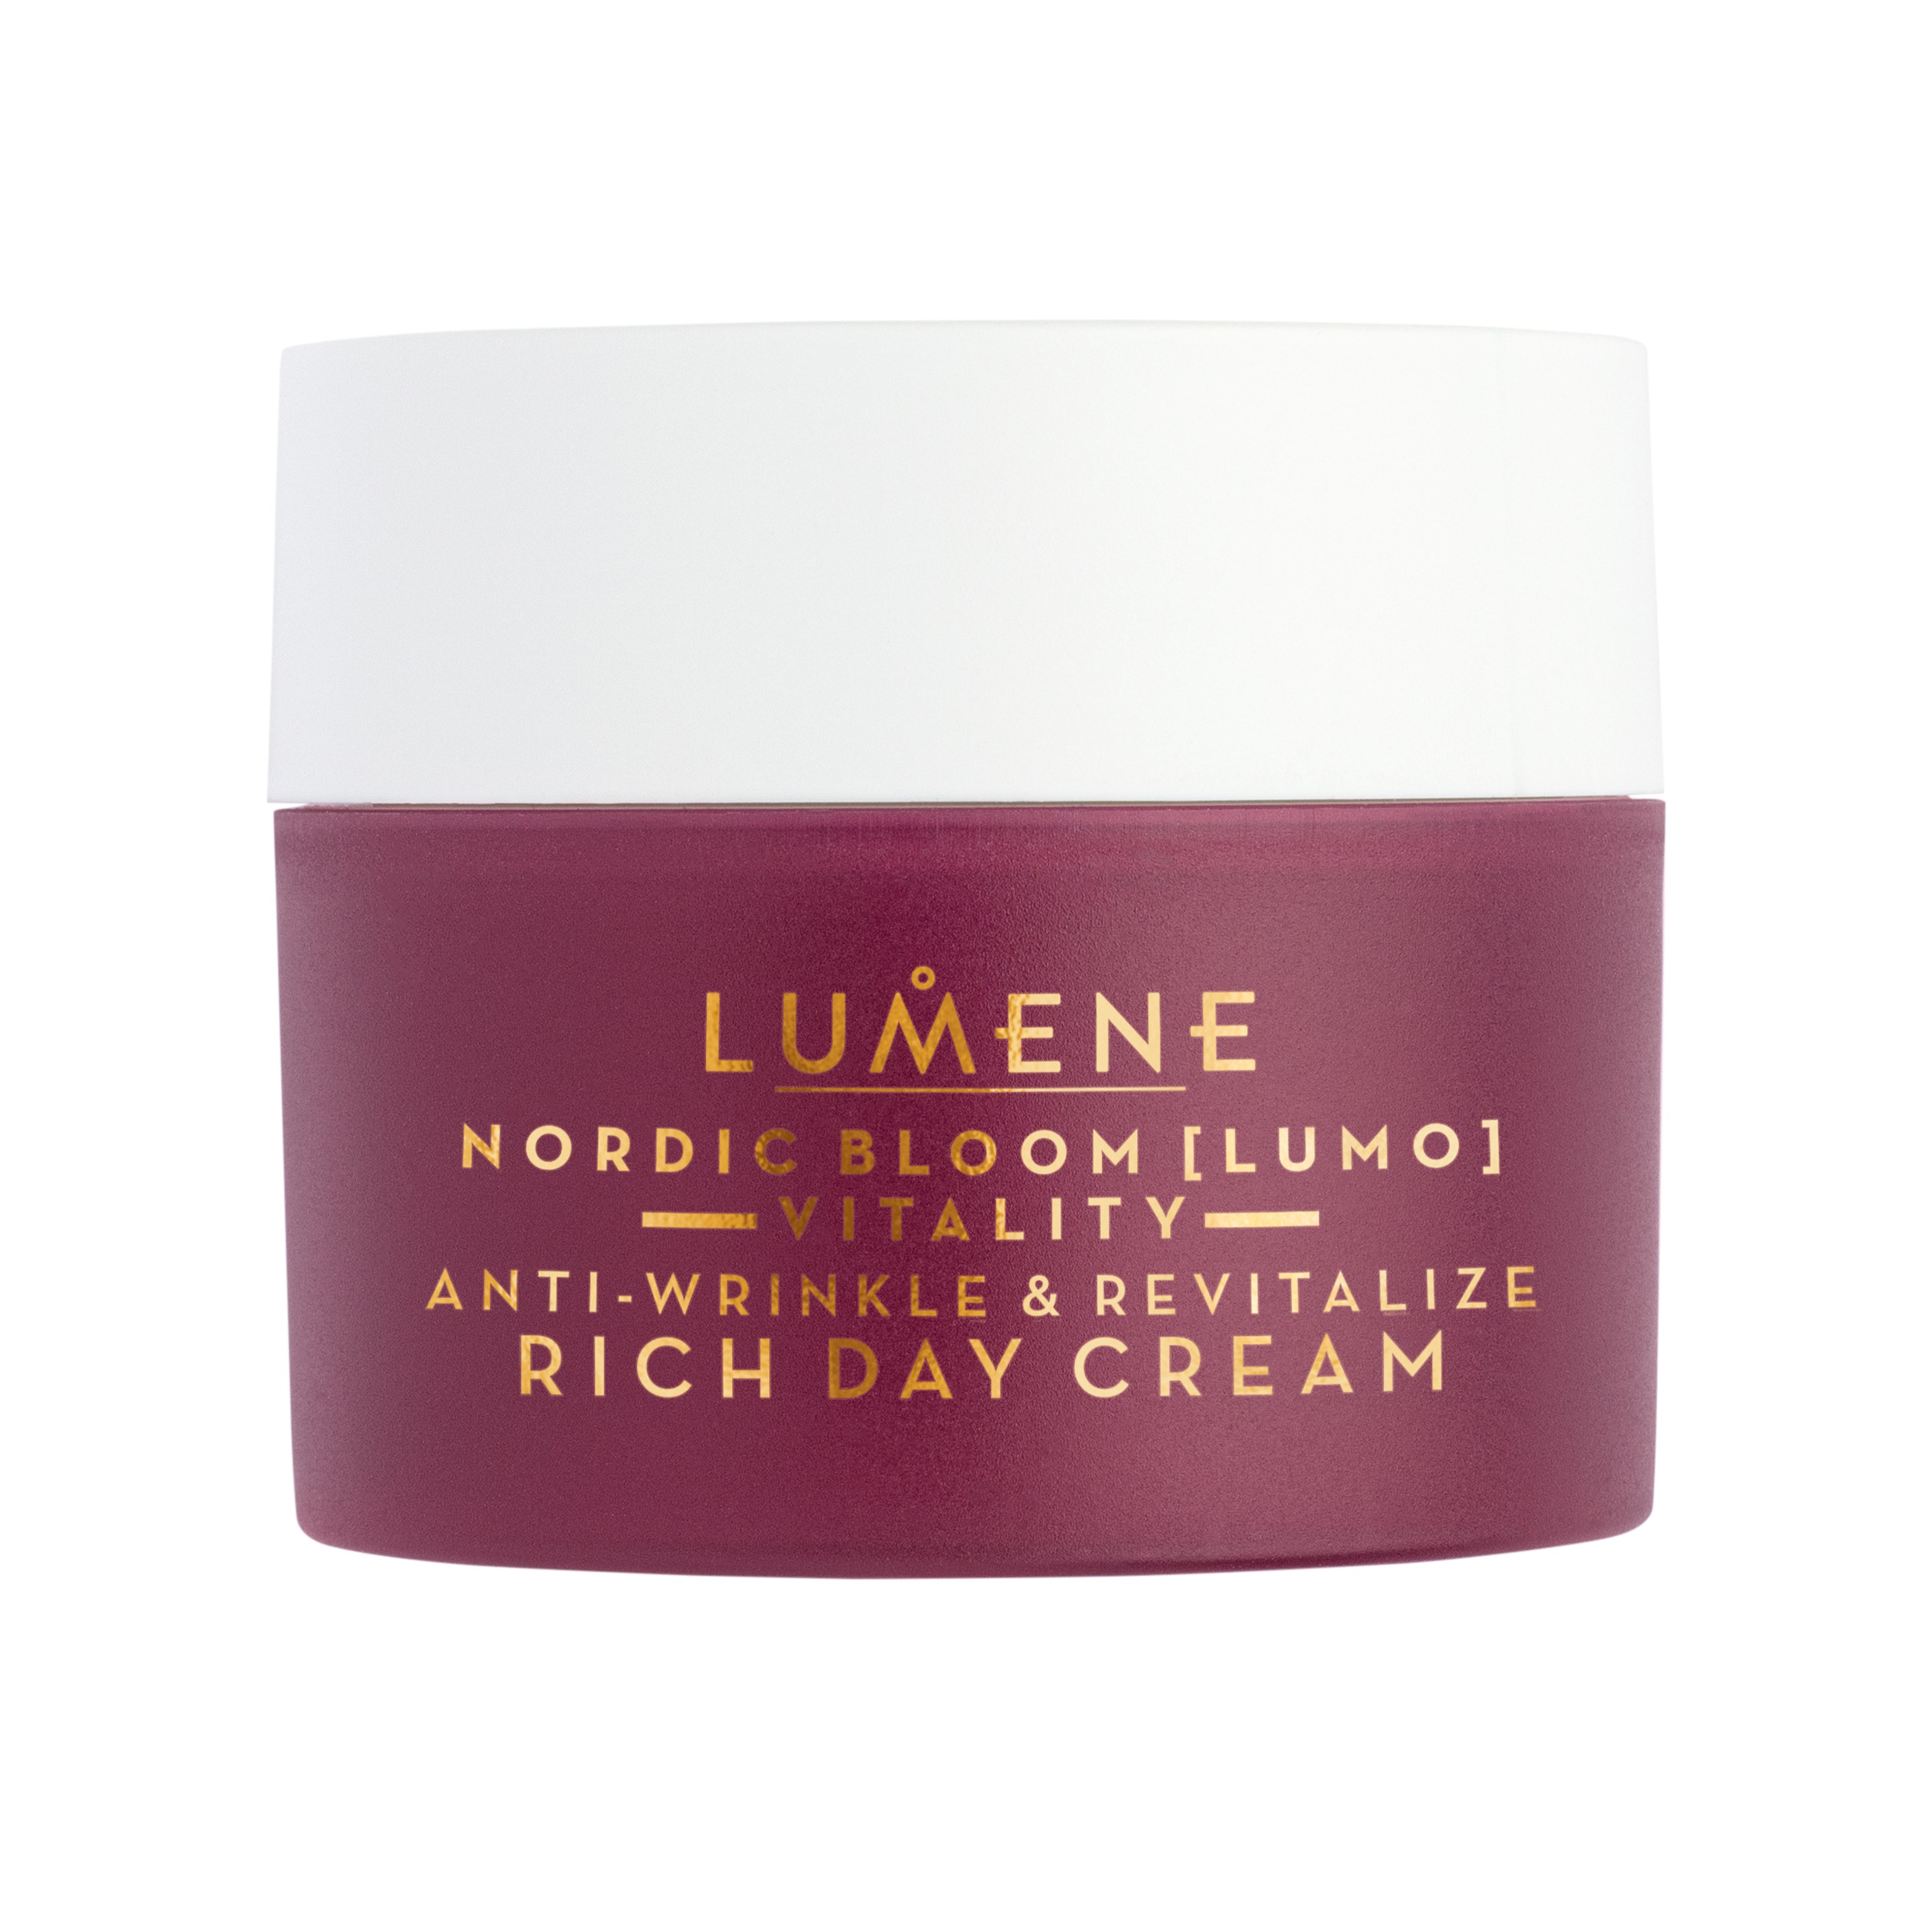 Bilde av Lumene Nordic Bloom Vitality Anti-wrinkle & Revitalize Rich Day Cream